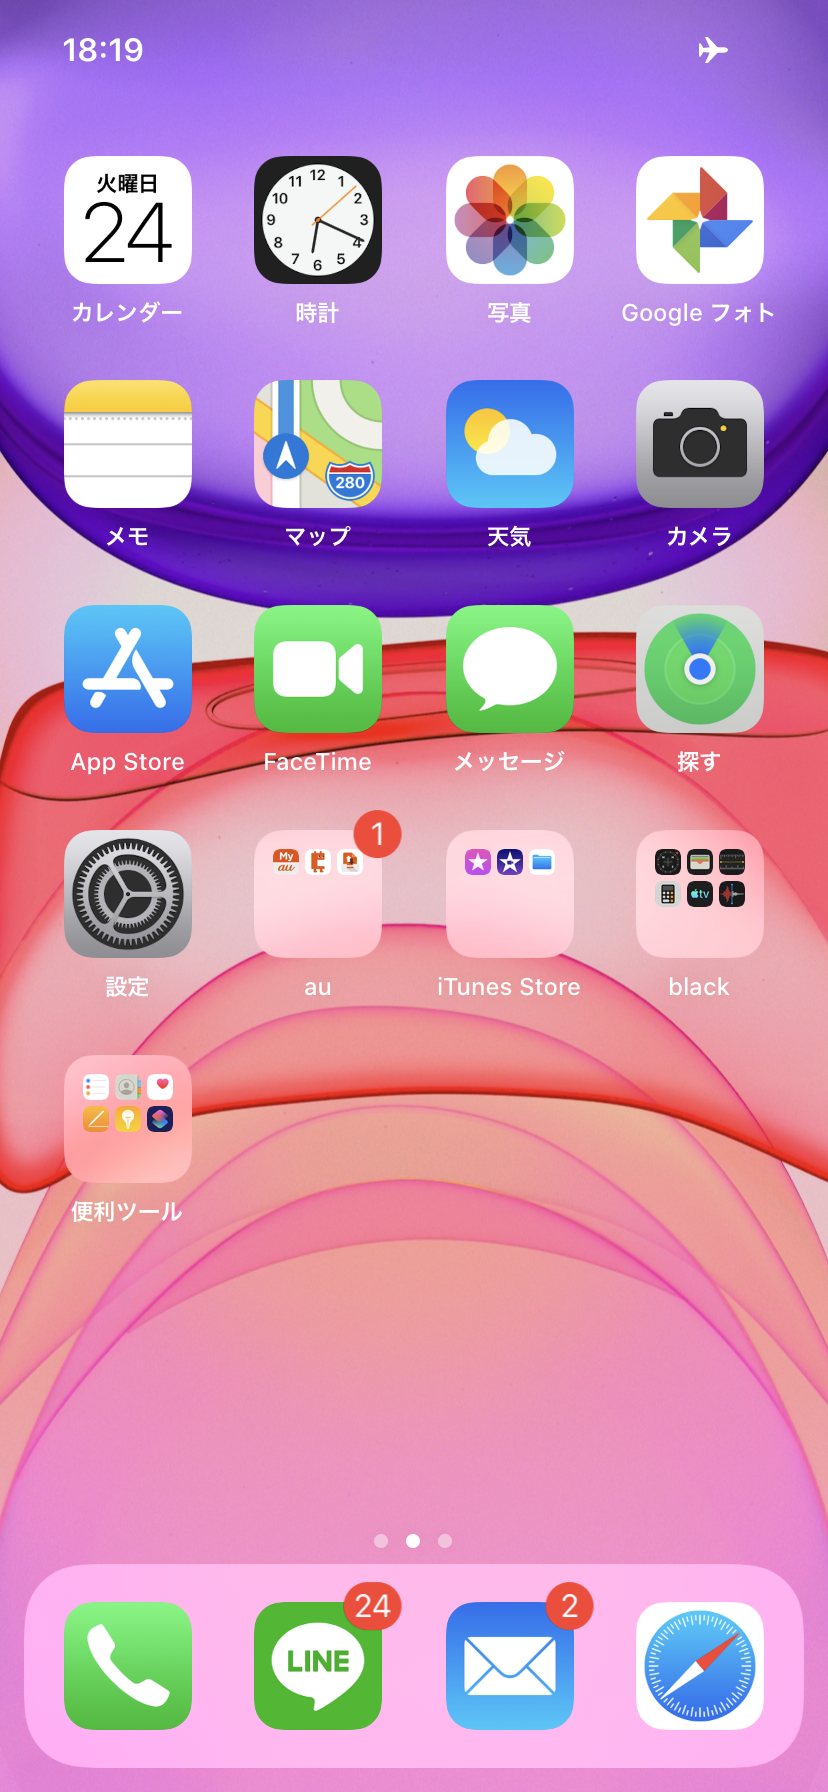 Iphone11のホーム画面 Apple コミュニティ